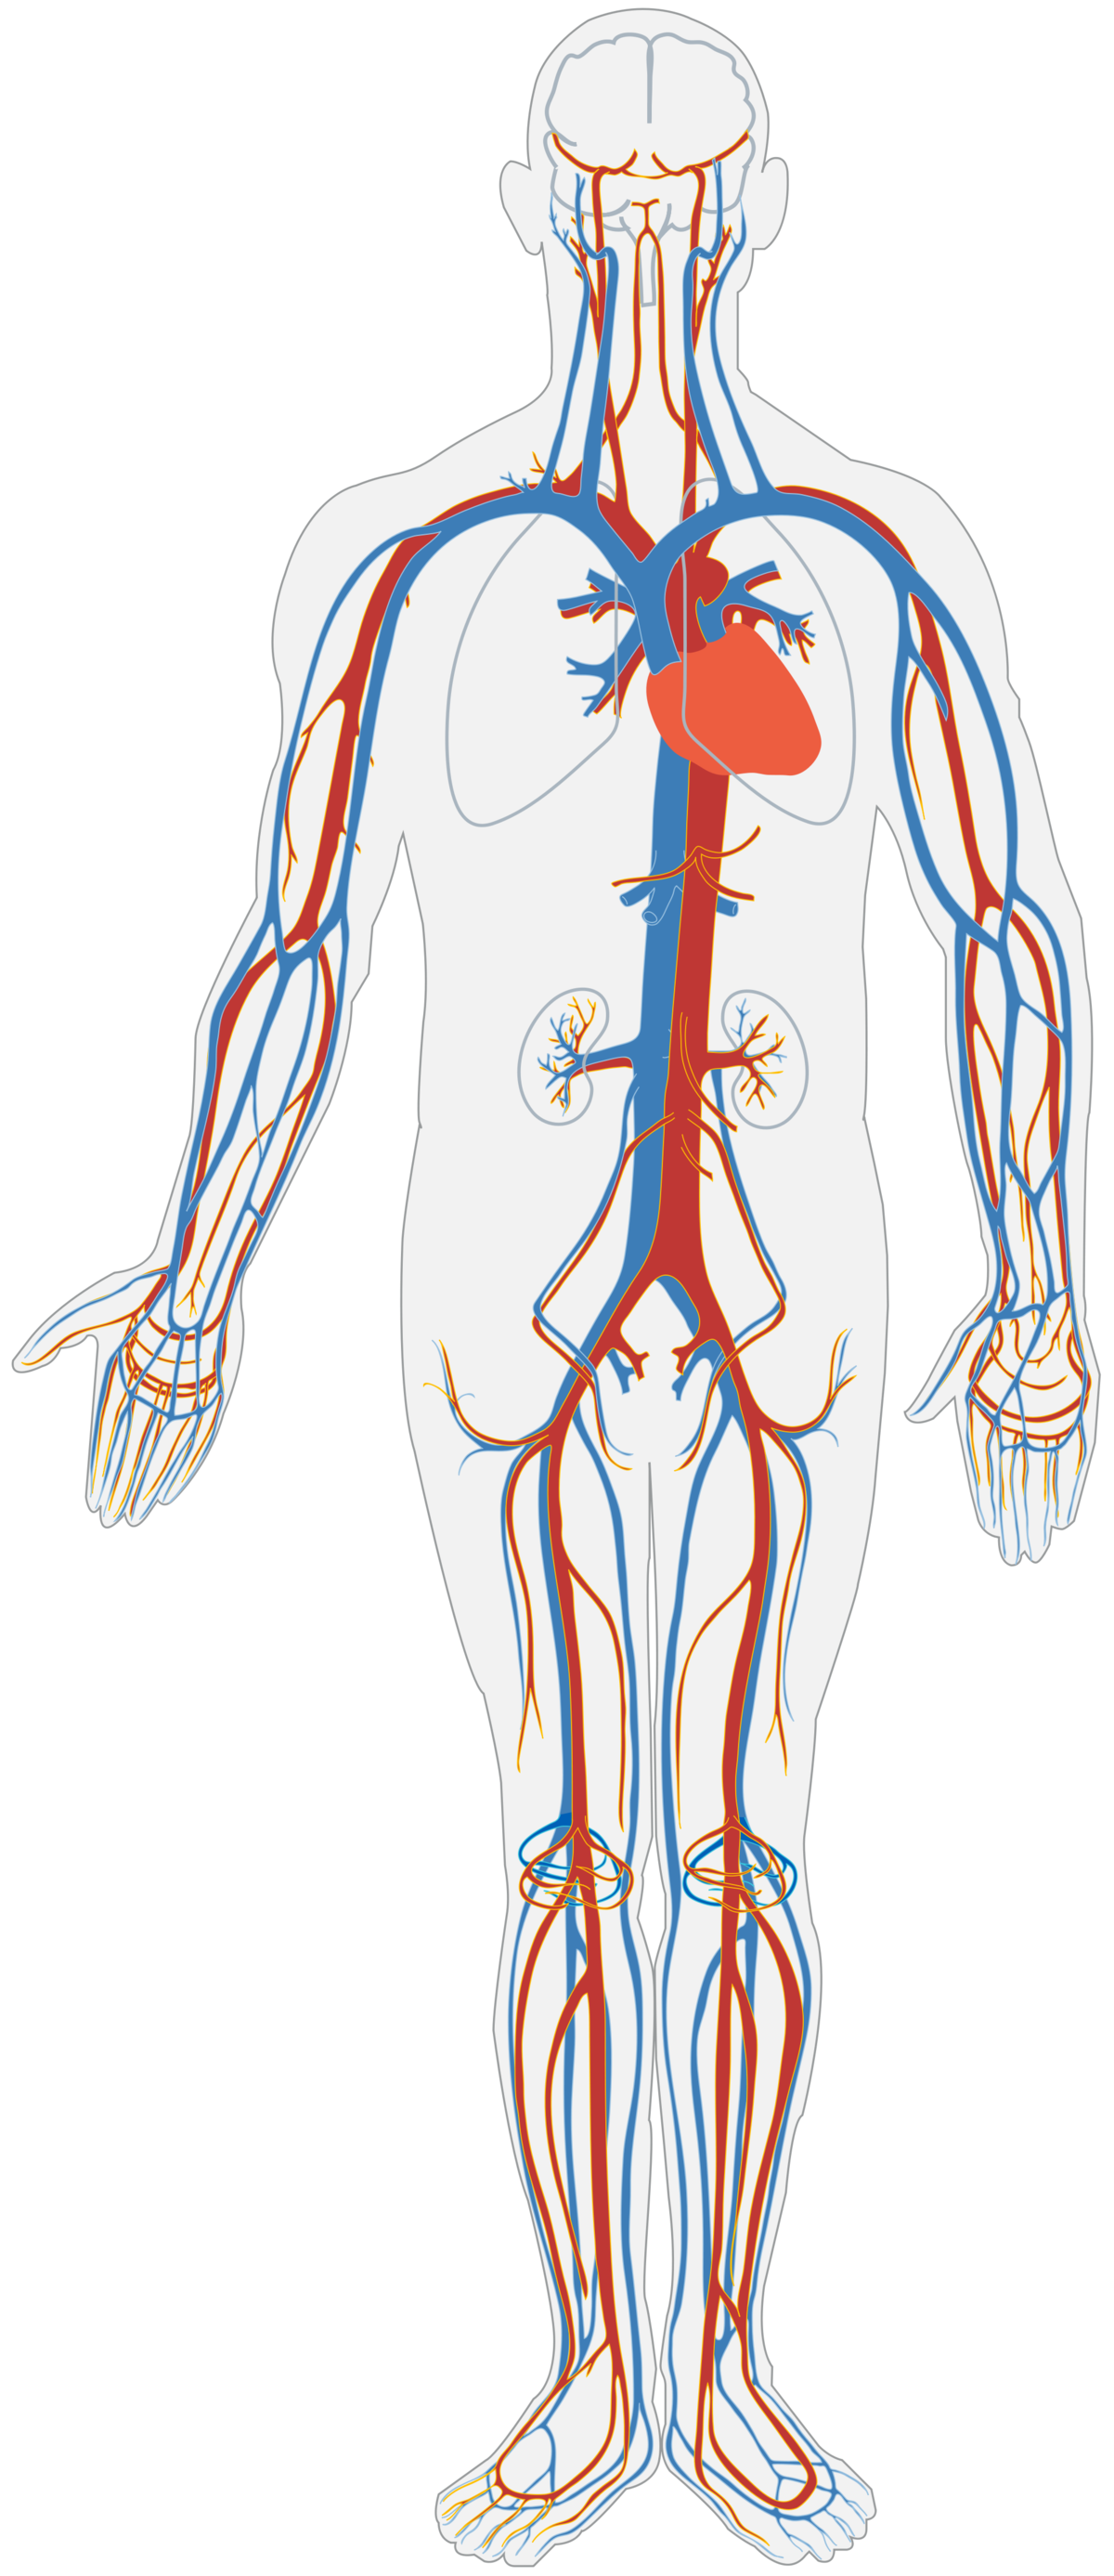 le systeme circulatoire et son anatomie alloprof le systeme circulatoire et son anatomie